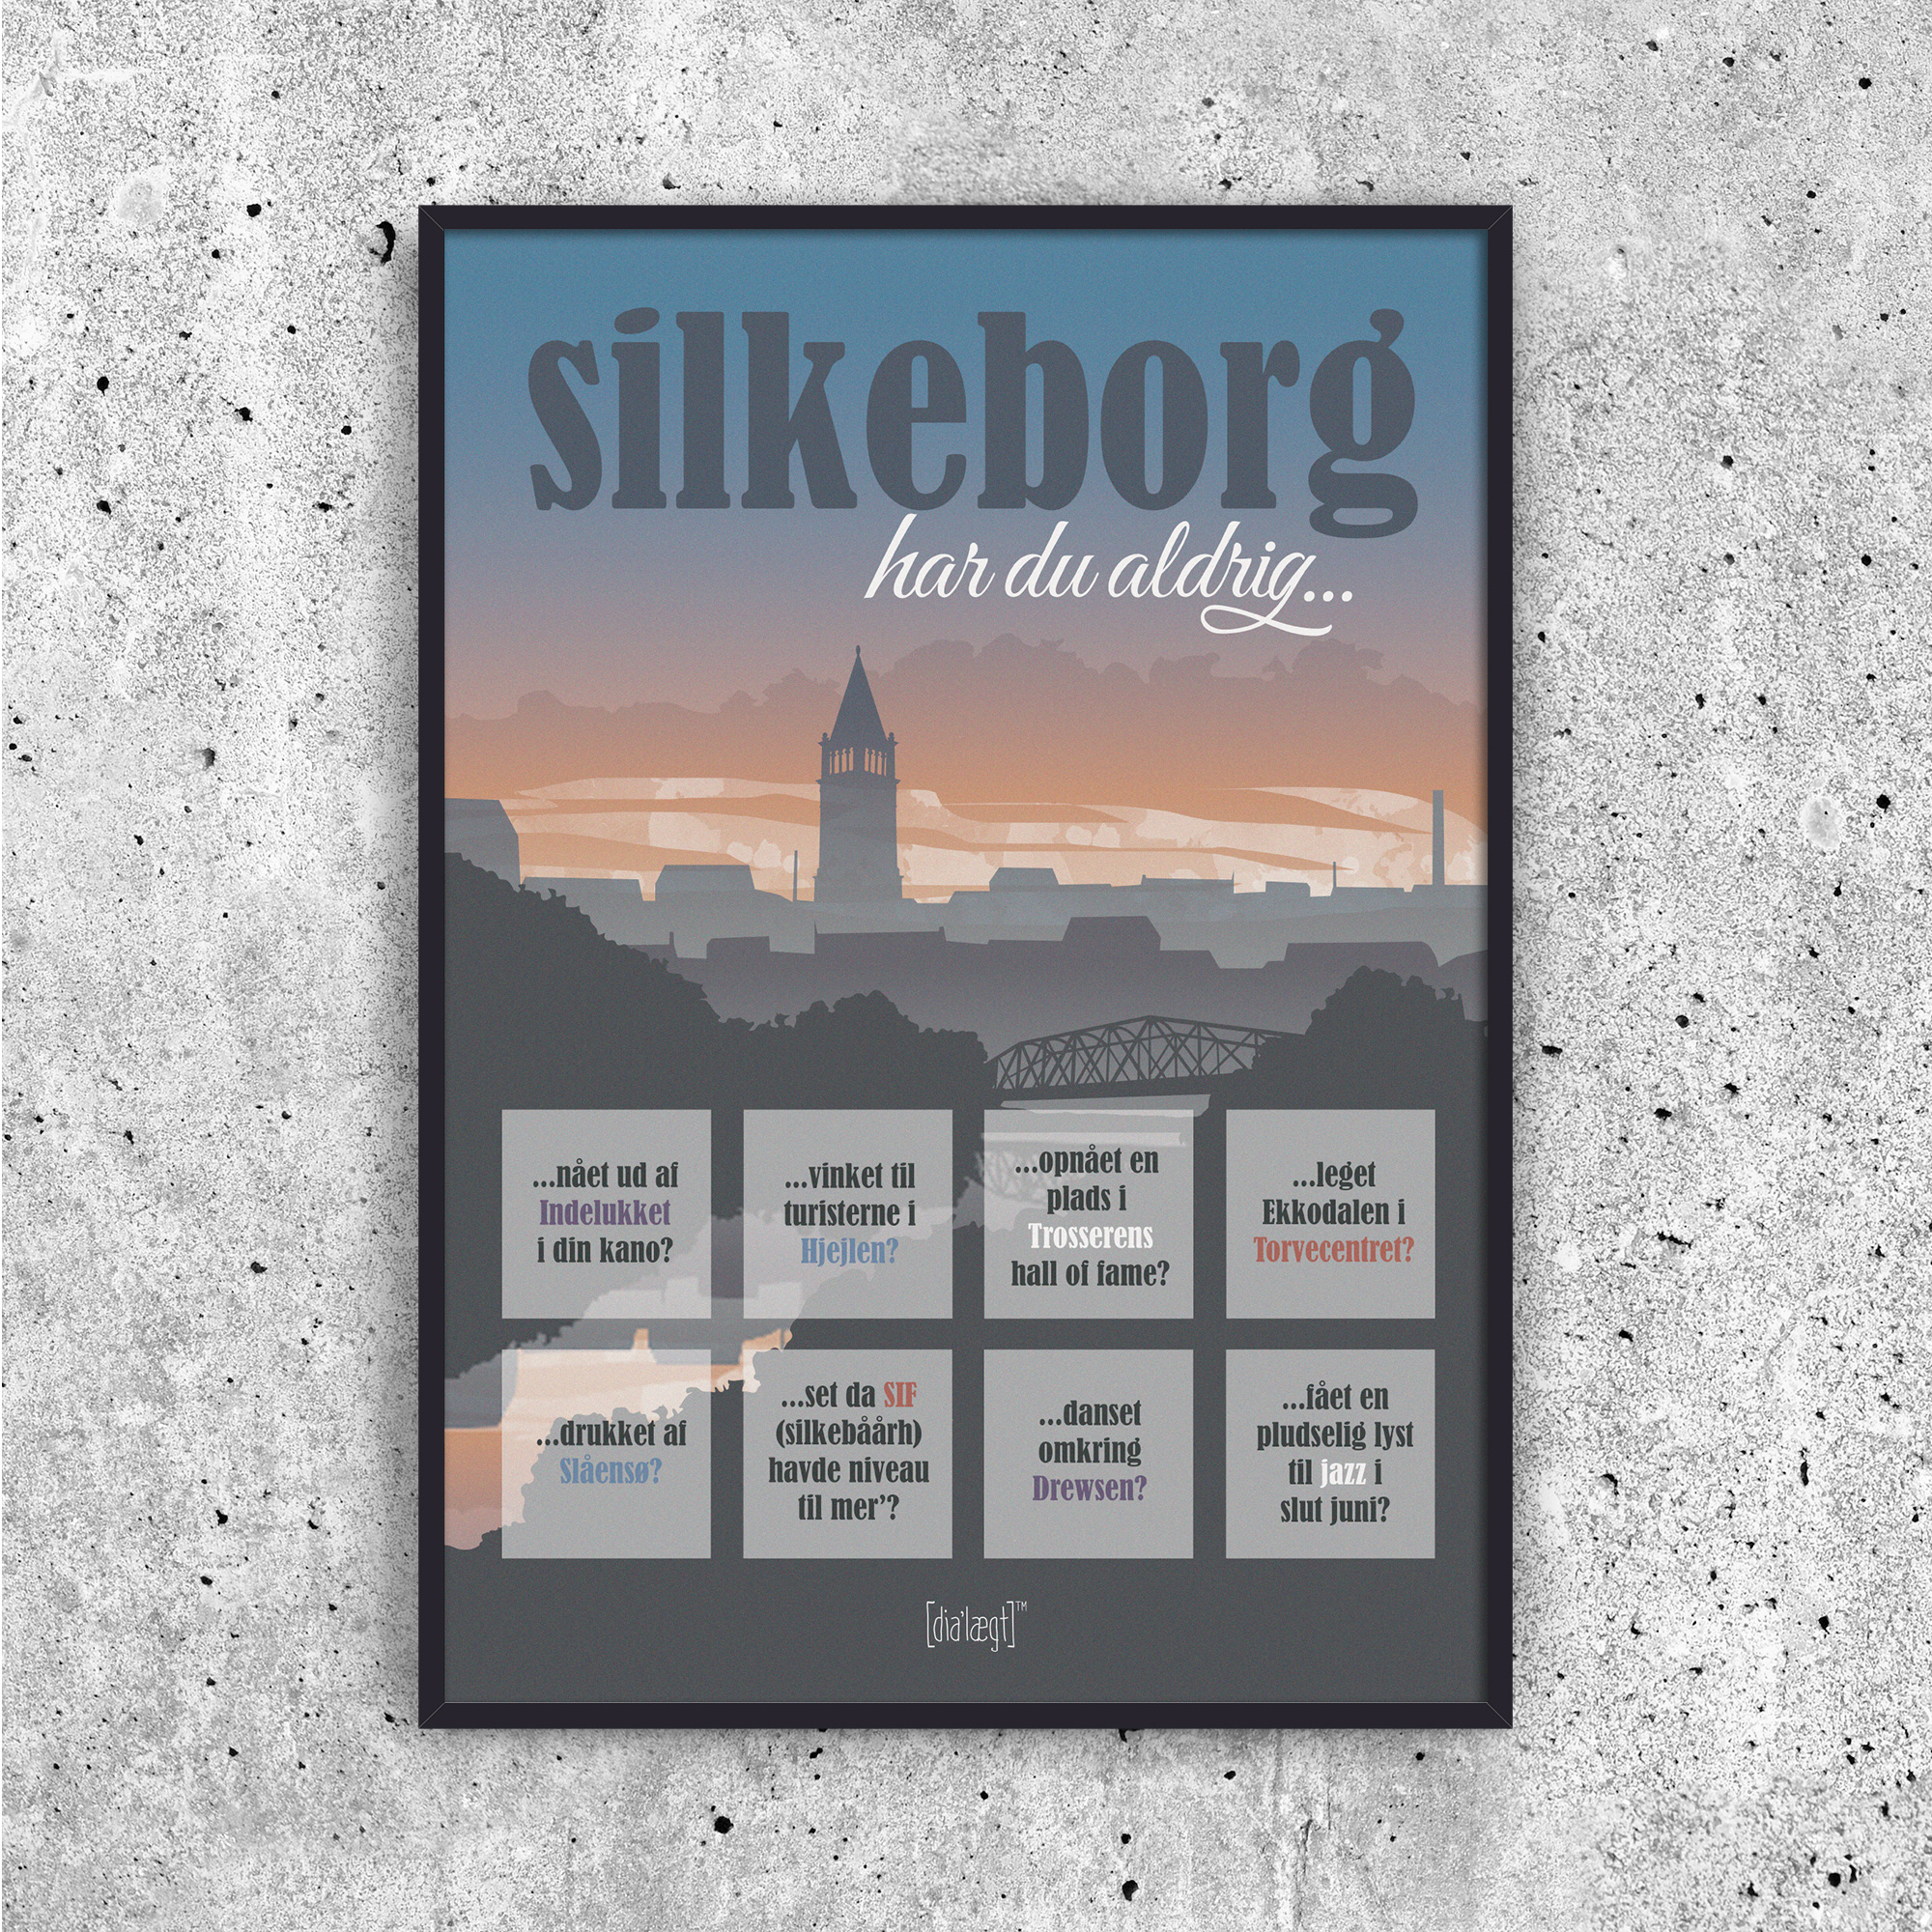 Se Silkeborg - Har du aldrig? hos Picment.dk